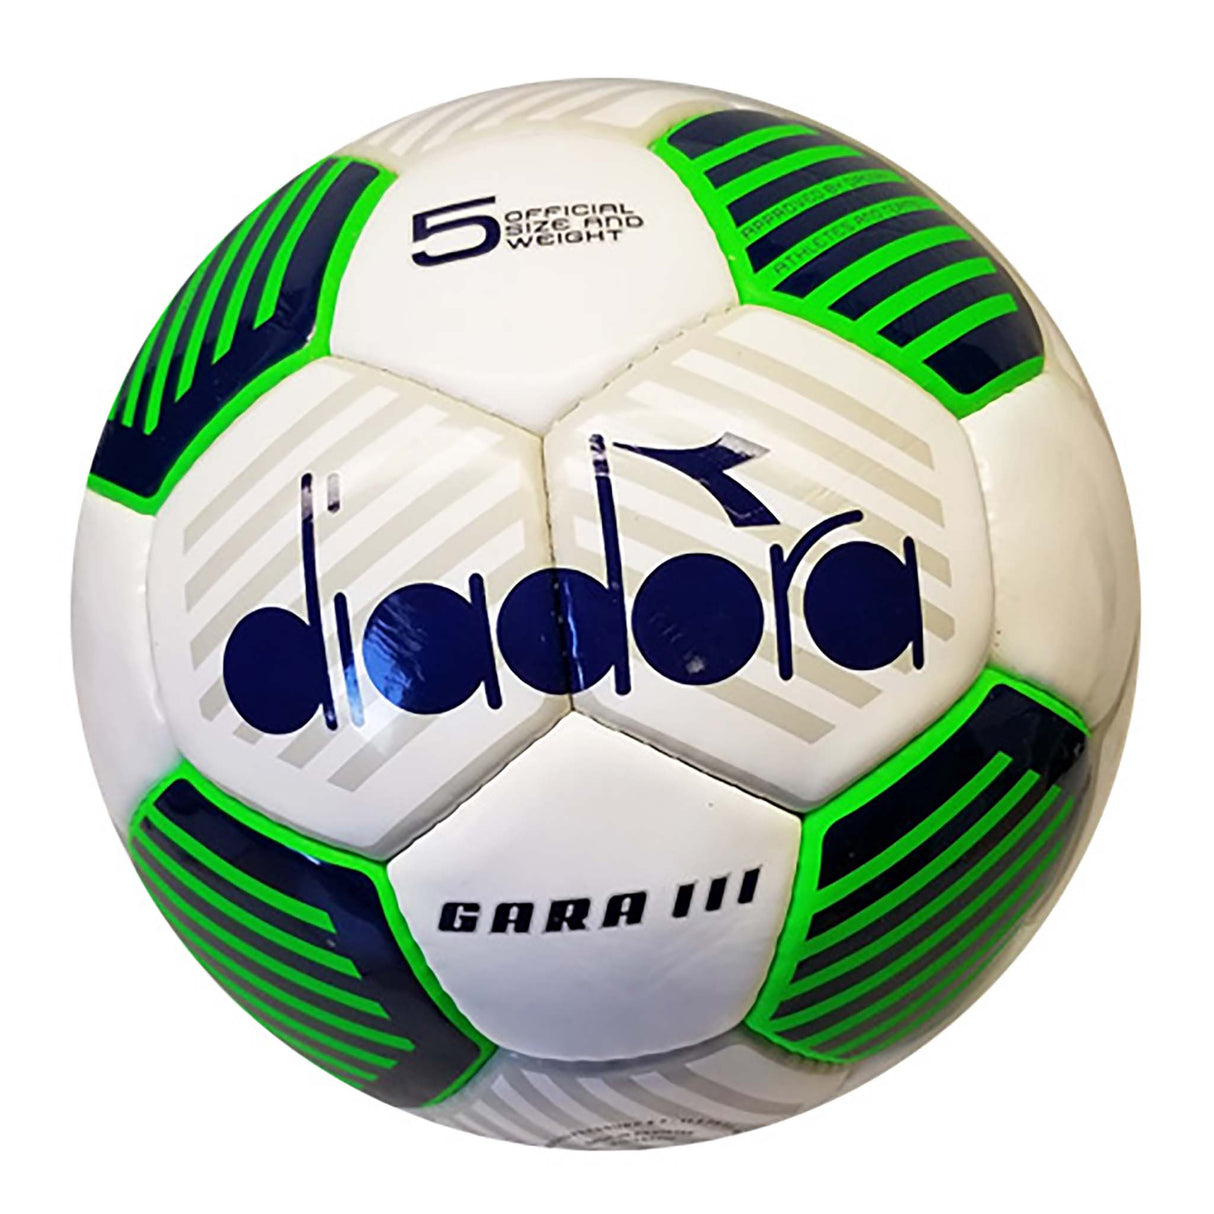 Diadora Gara III ballon de soccer